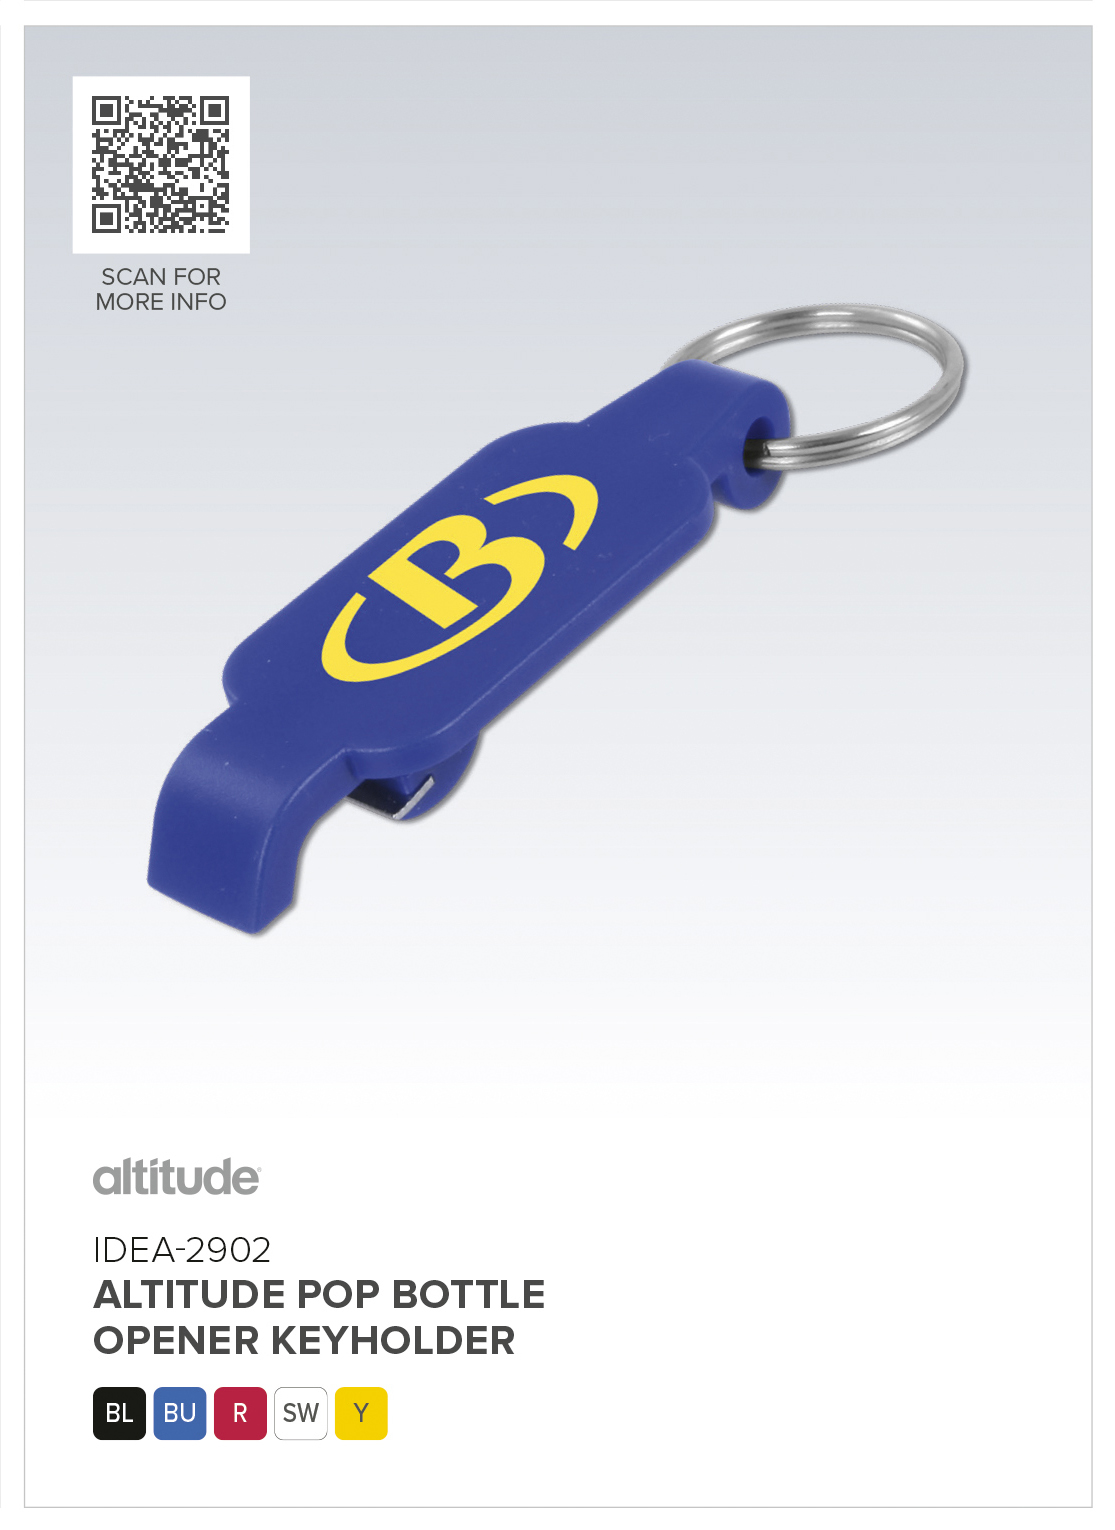 Altitude Pop Bottle Opener Keyholder